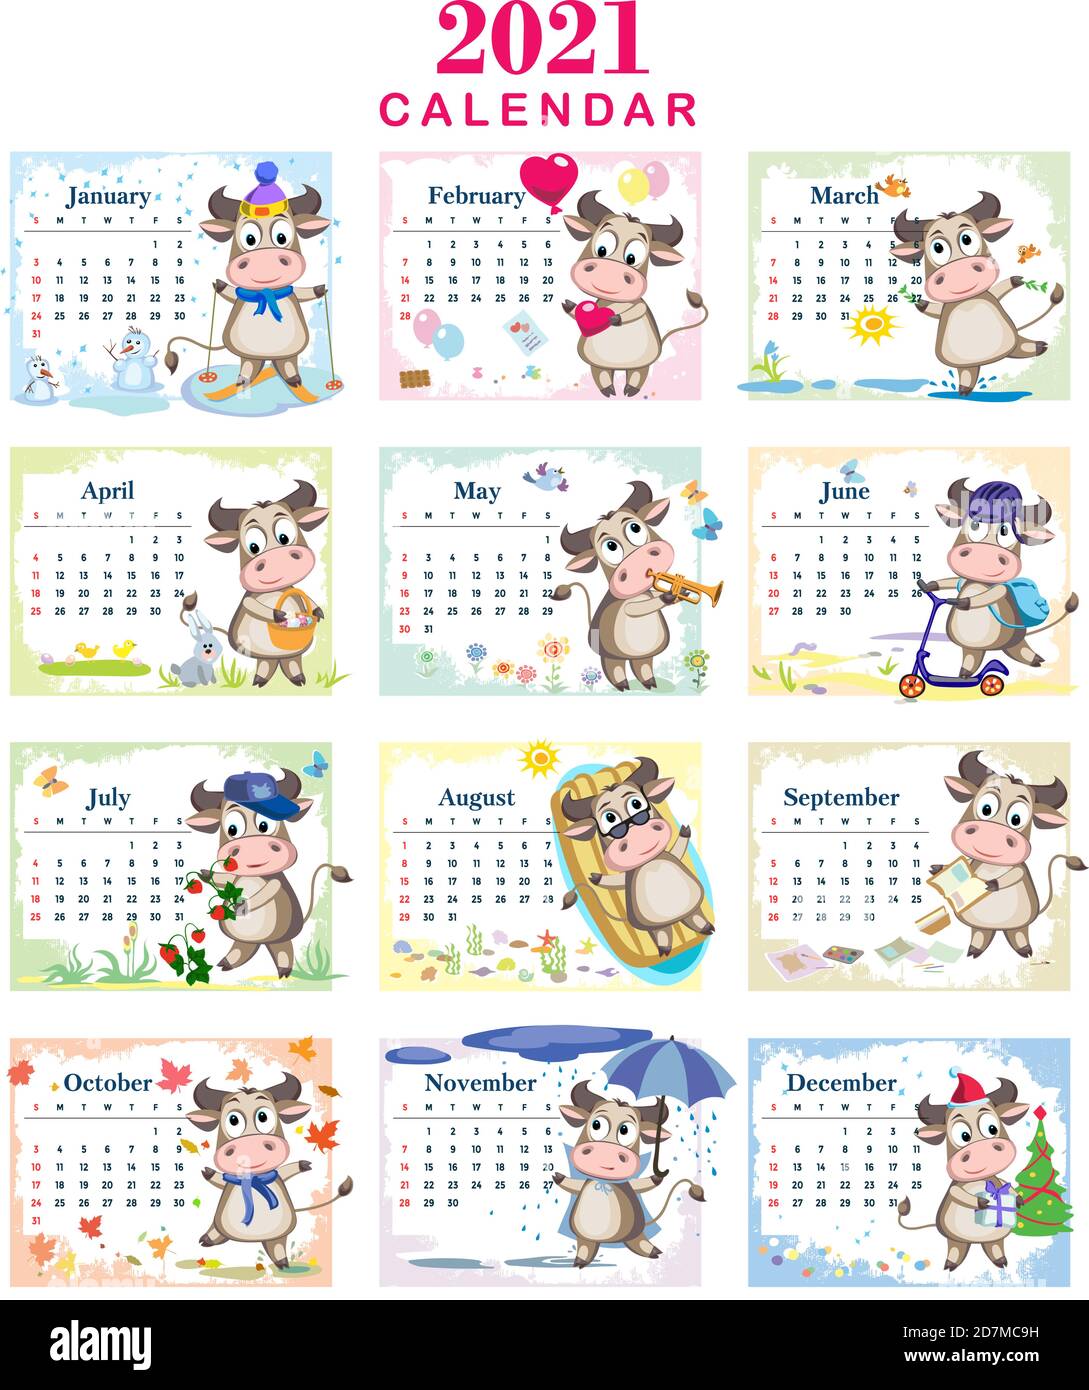 Calendario dei bambini per il 2021 - anno di bull. I tori simpatici si divertono e si rilassano. Modello vettoriale cartoon per calendario o pianificatore. Illustrazione Vettoriale